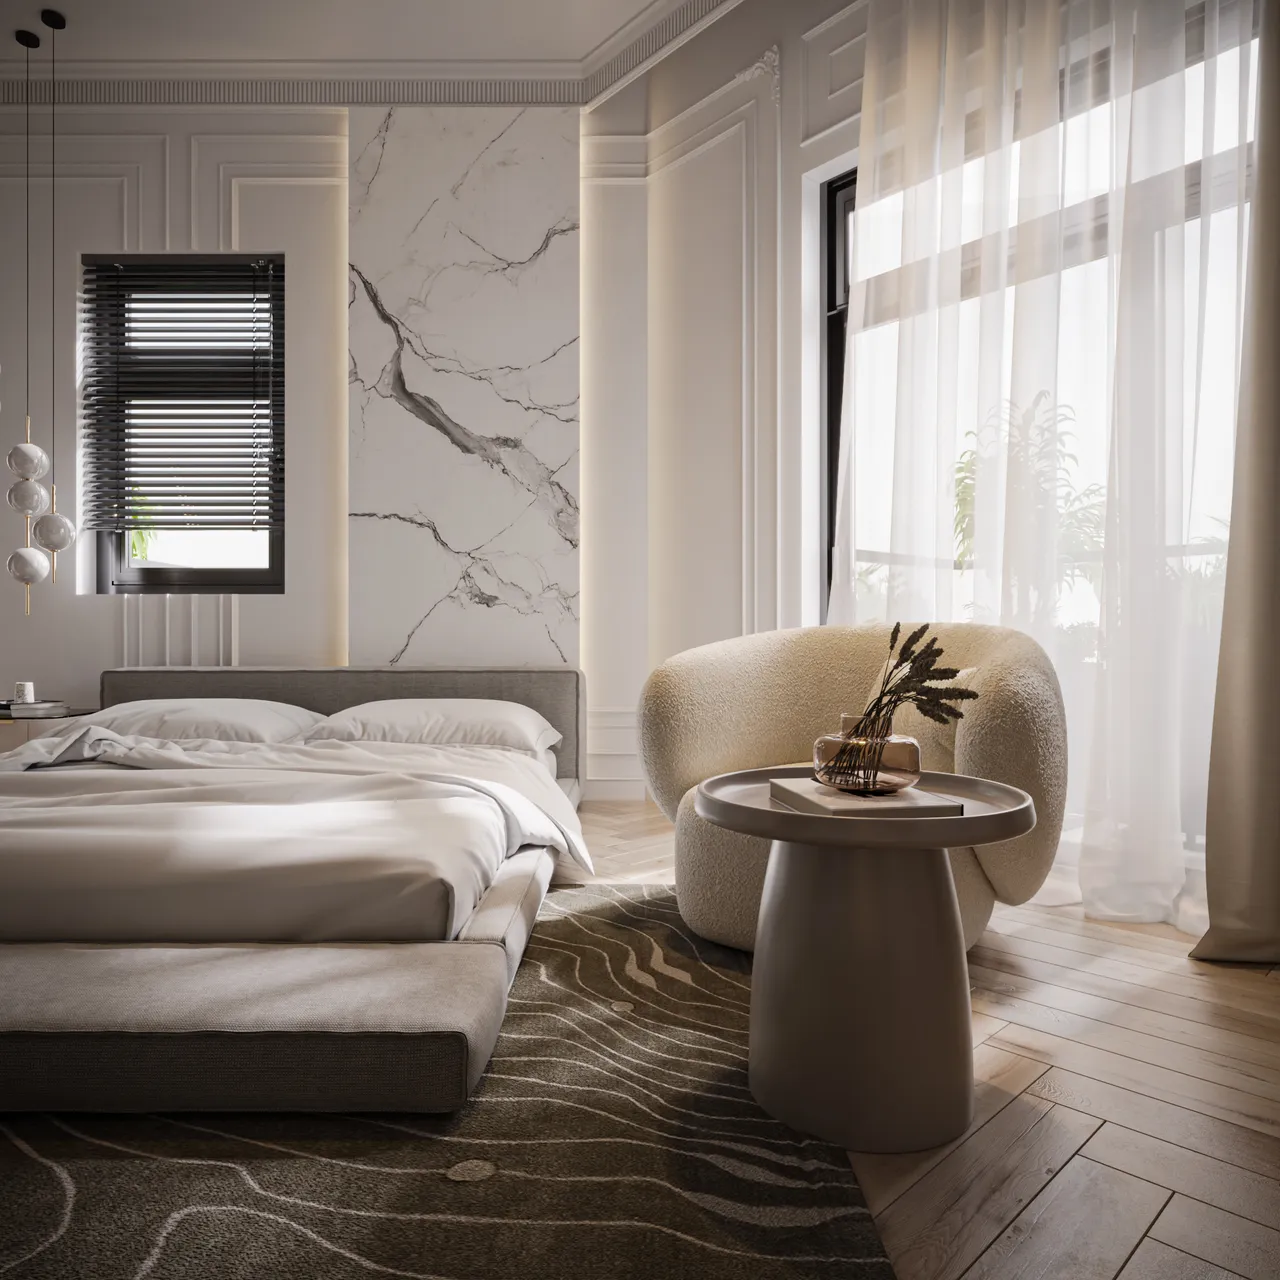 Concept nội thất phòng ngủ master Nhà phố Trảng Bàng, Tây Ninh phong cách Tân cổ điển Neo Classic